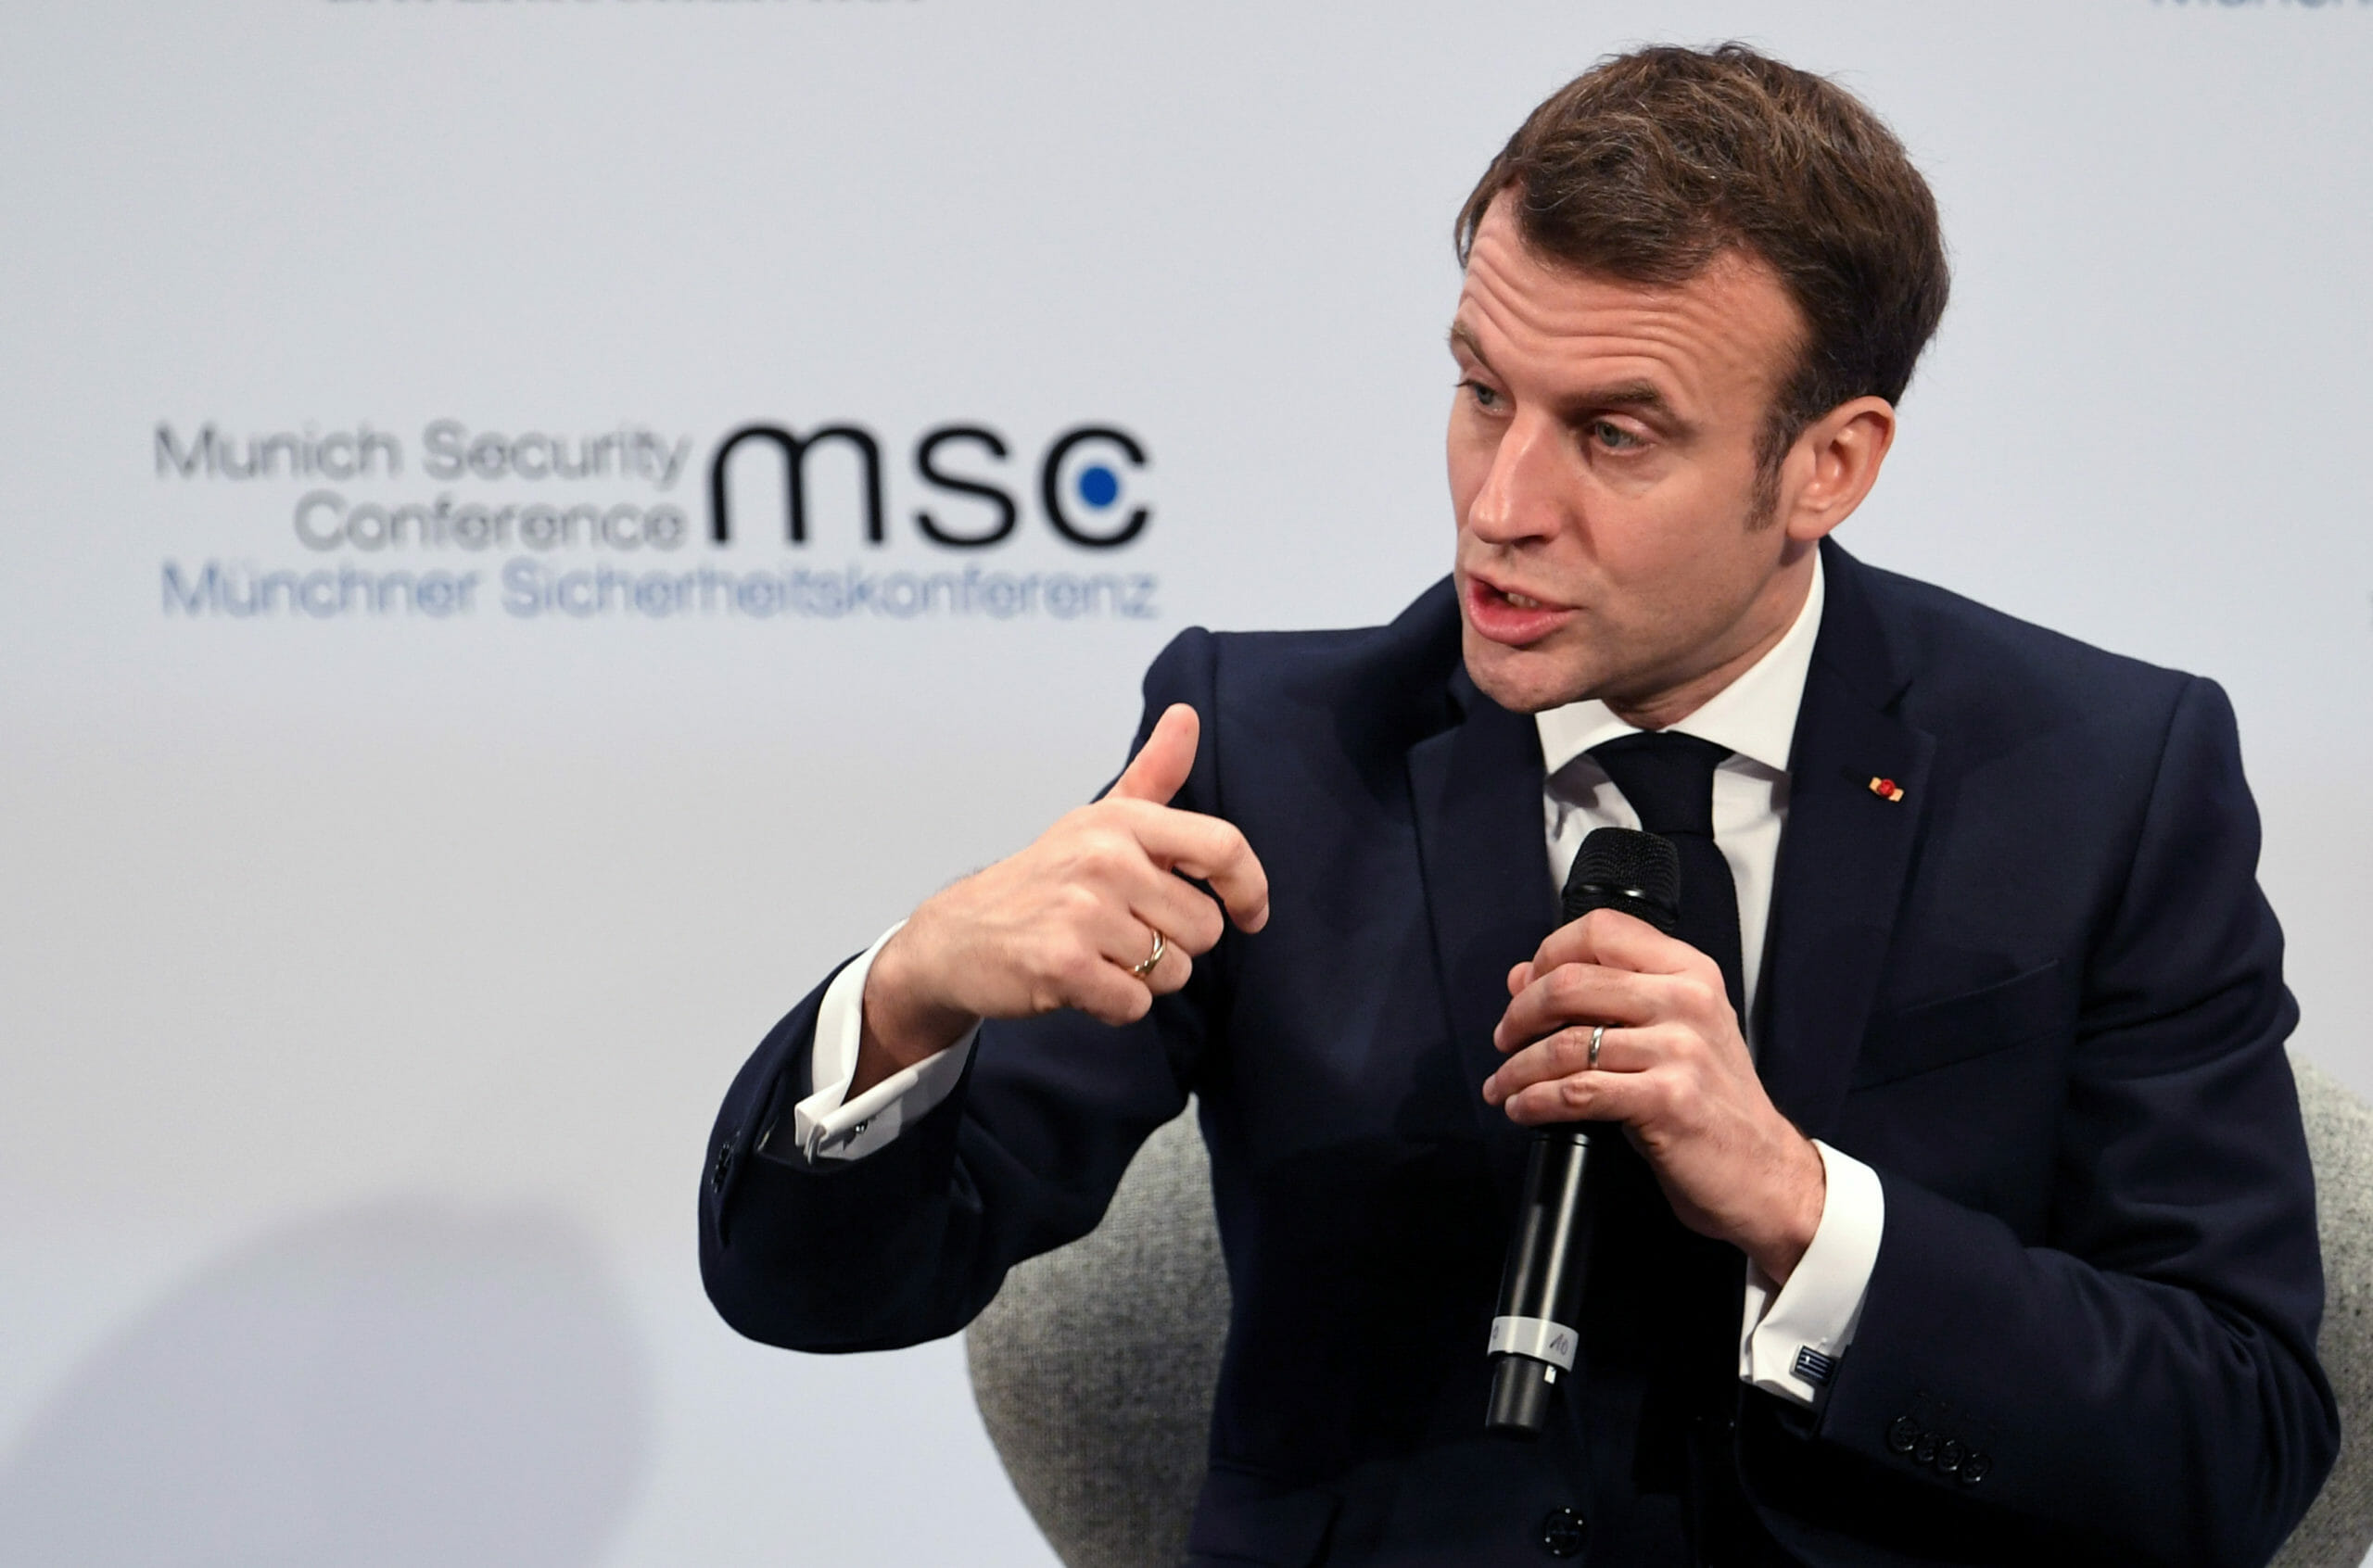 Γαλλία: Προτείνει κορονο-ομόλογα 150-300 δισ. ευρώ το 2021-23 για ανάκαμψη της ΕΕ